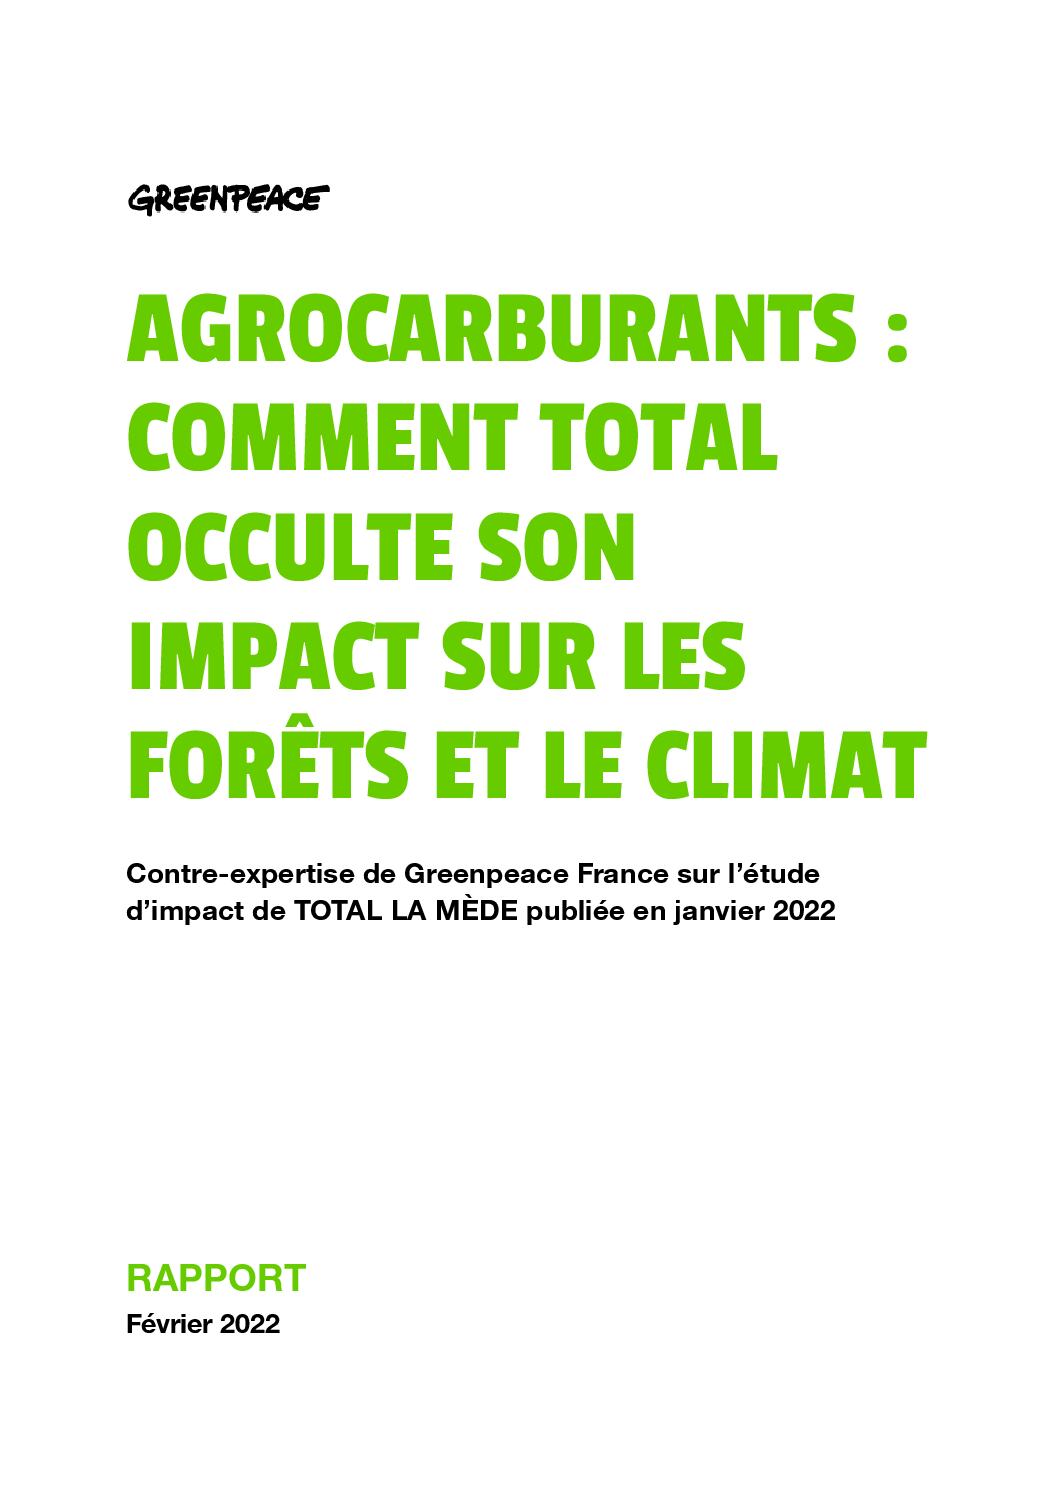 Agrocarburants: comment Total occulte son impact sur les forêts et le climat